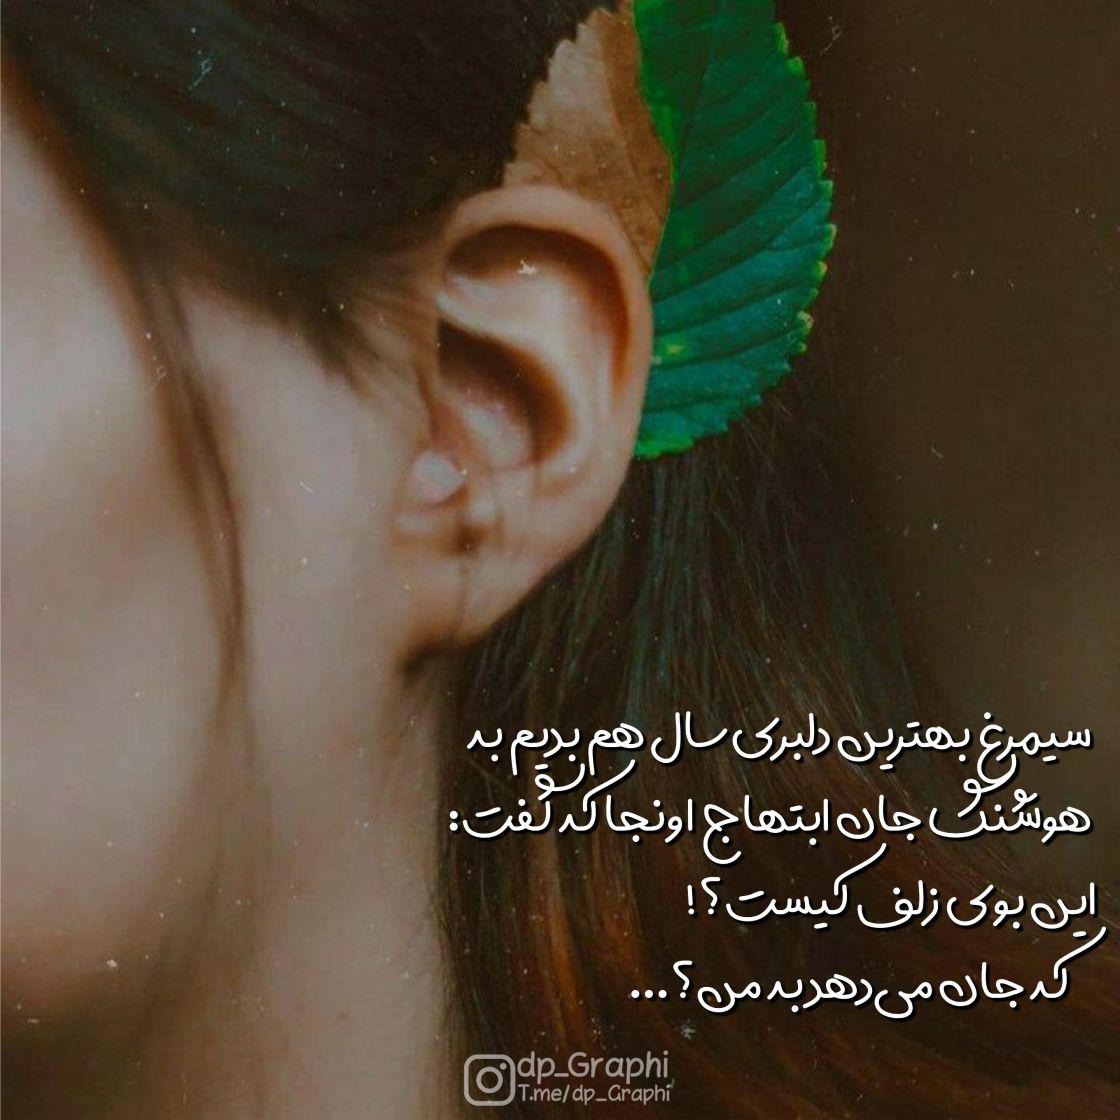 فونت فارسی دلبر 2 و یک عکسنوشته عاشقانه